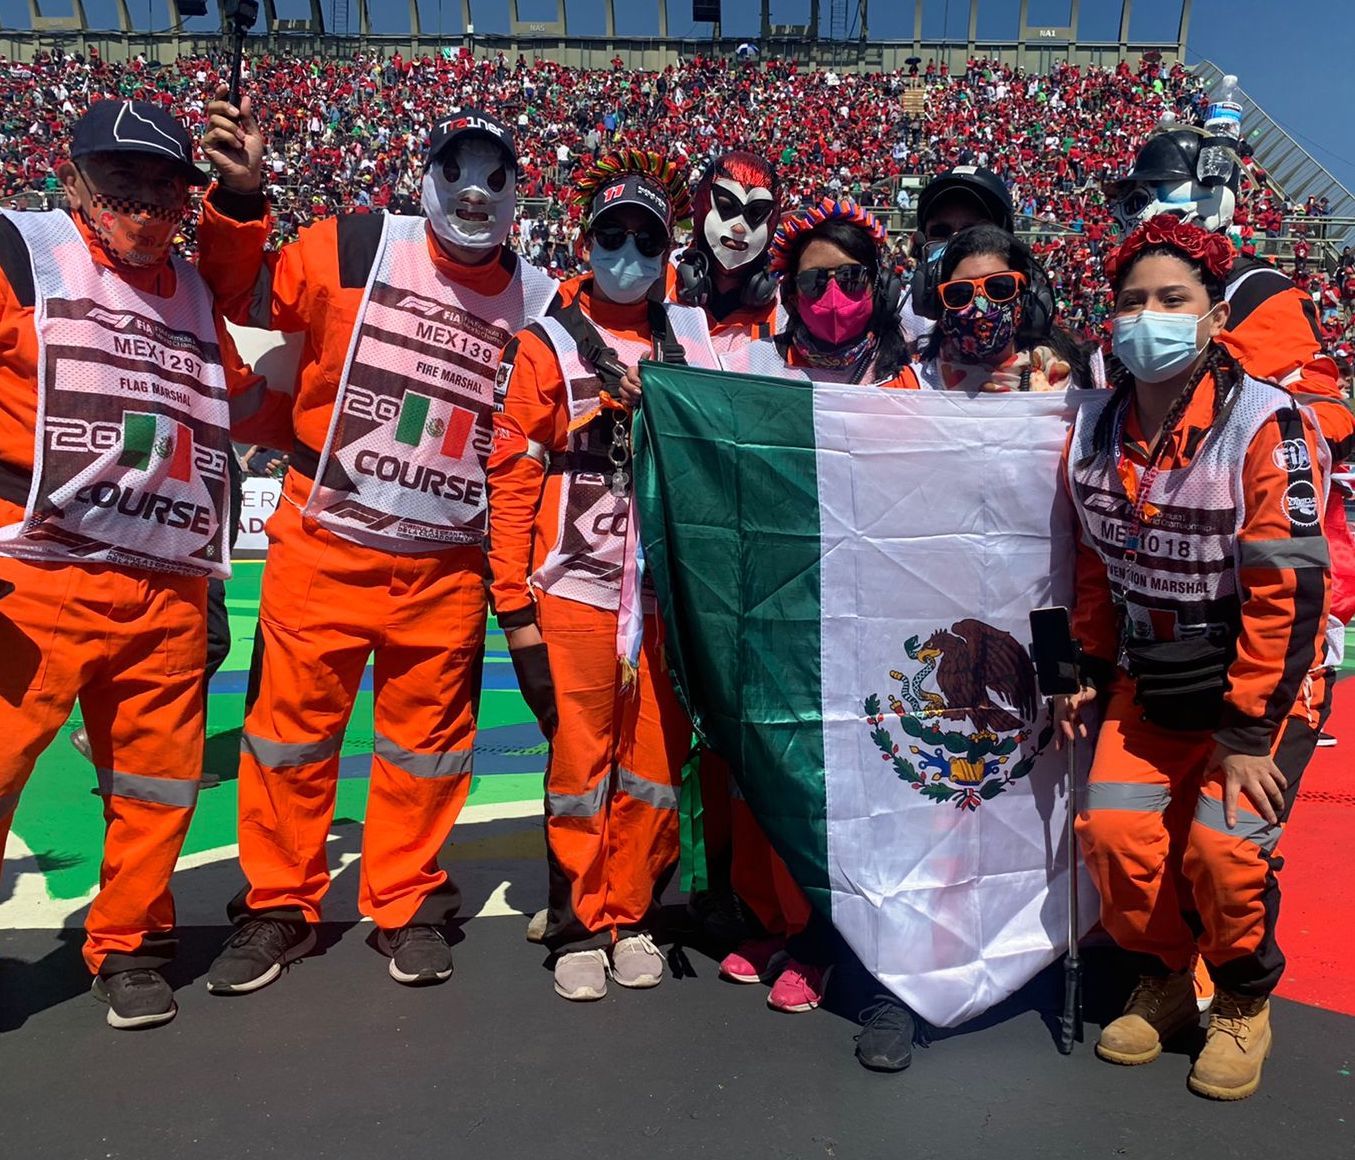 ¡Piel chinita! Así fueron las ovaciones a Checo Pérez en el desfile previo al Gran Premio de México